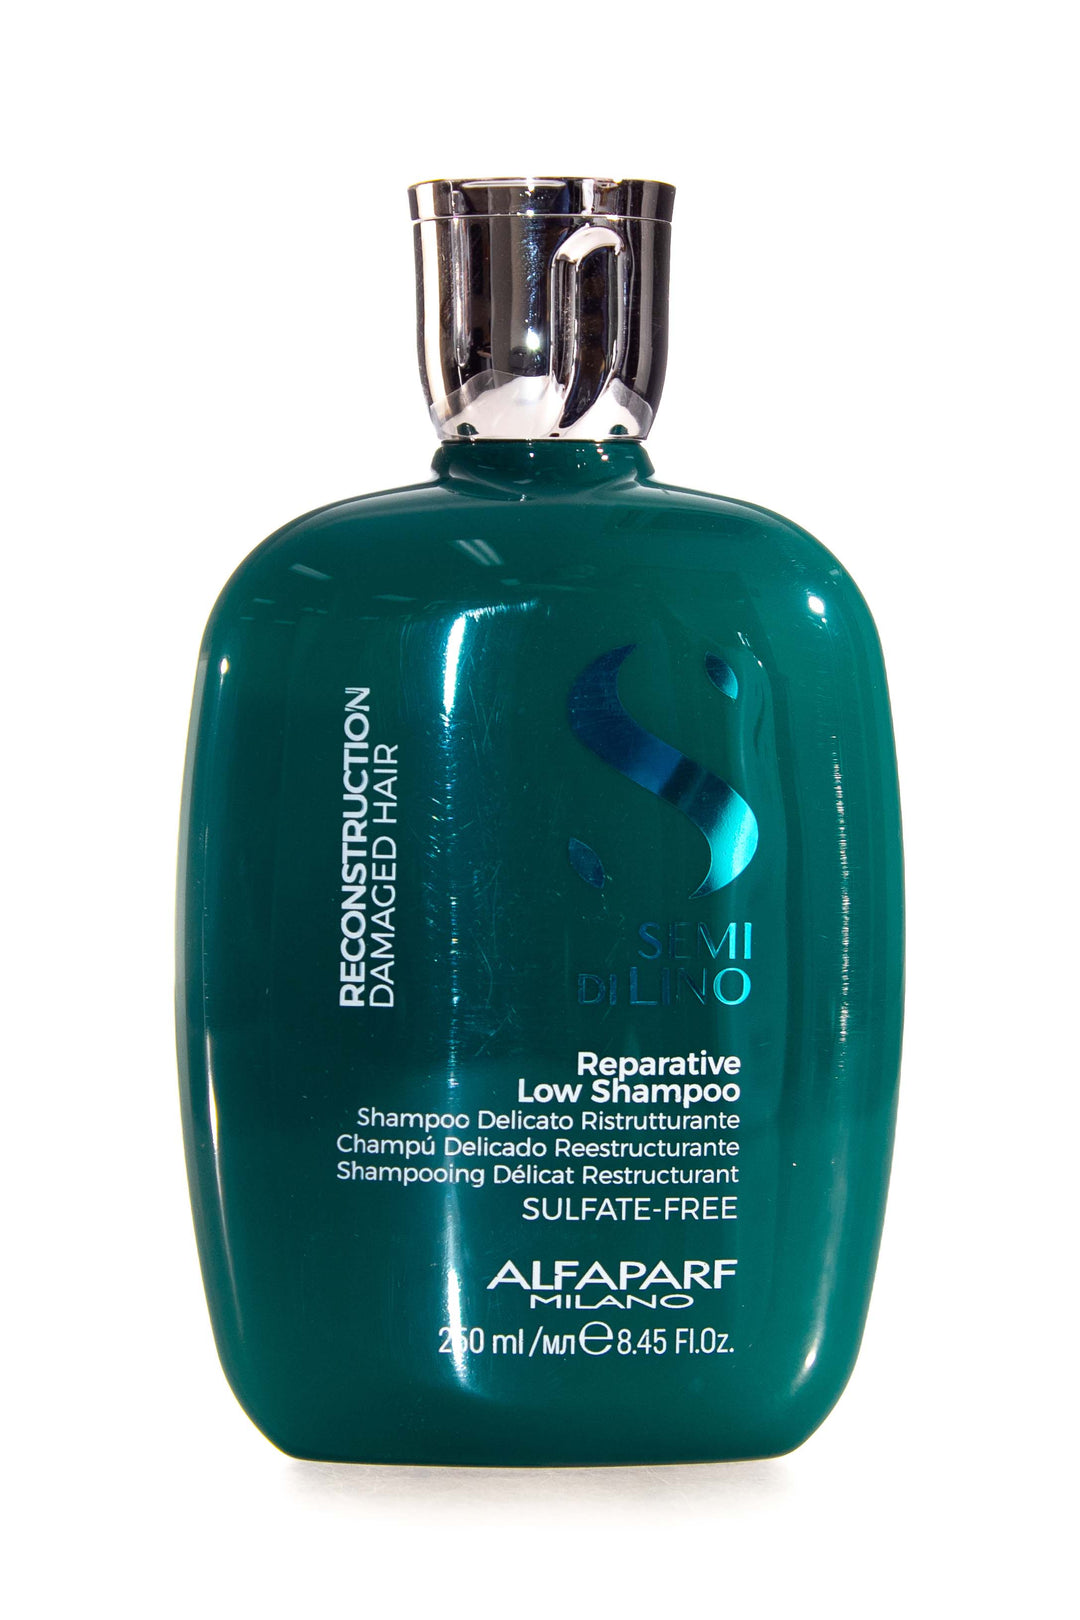 alfaparf-milano-semi-di-lino-reconstruction-reparative-low-shampoo-250ml